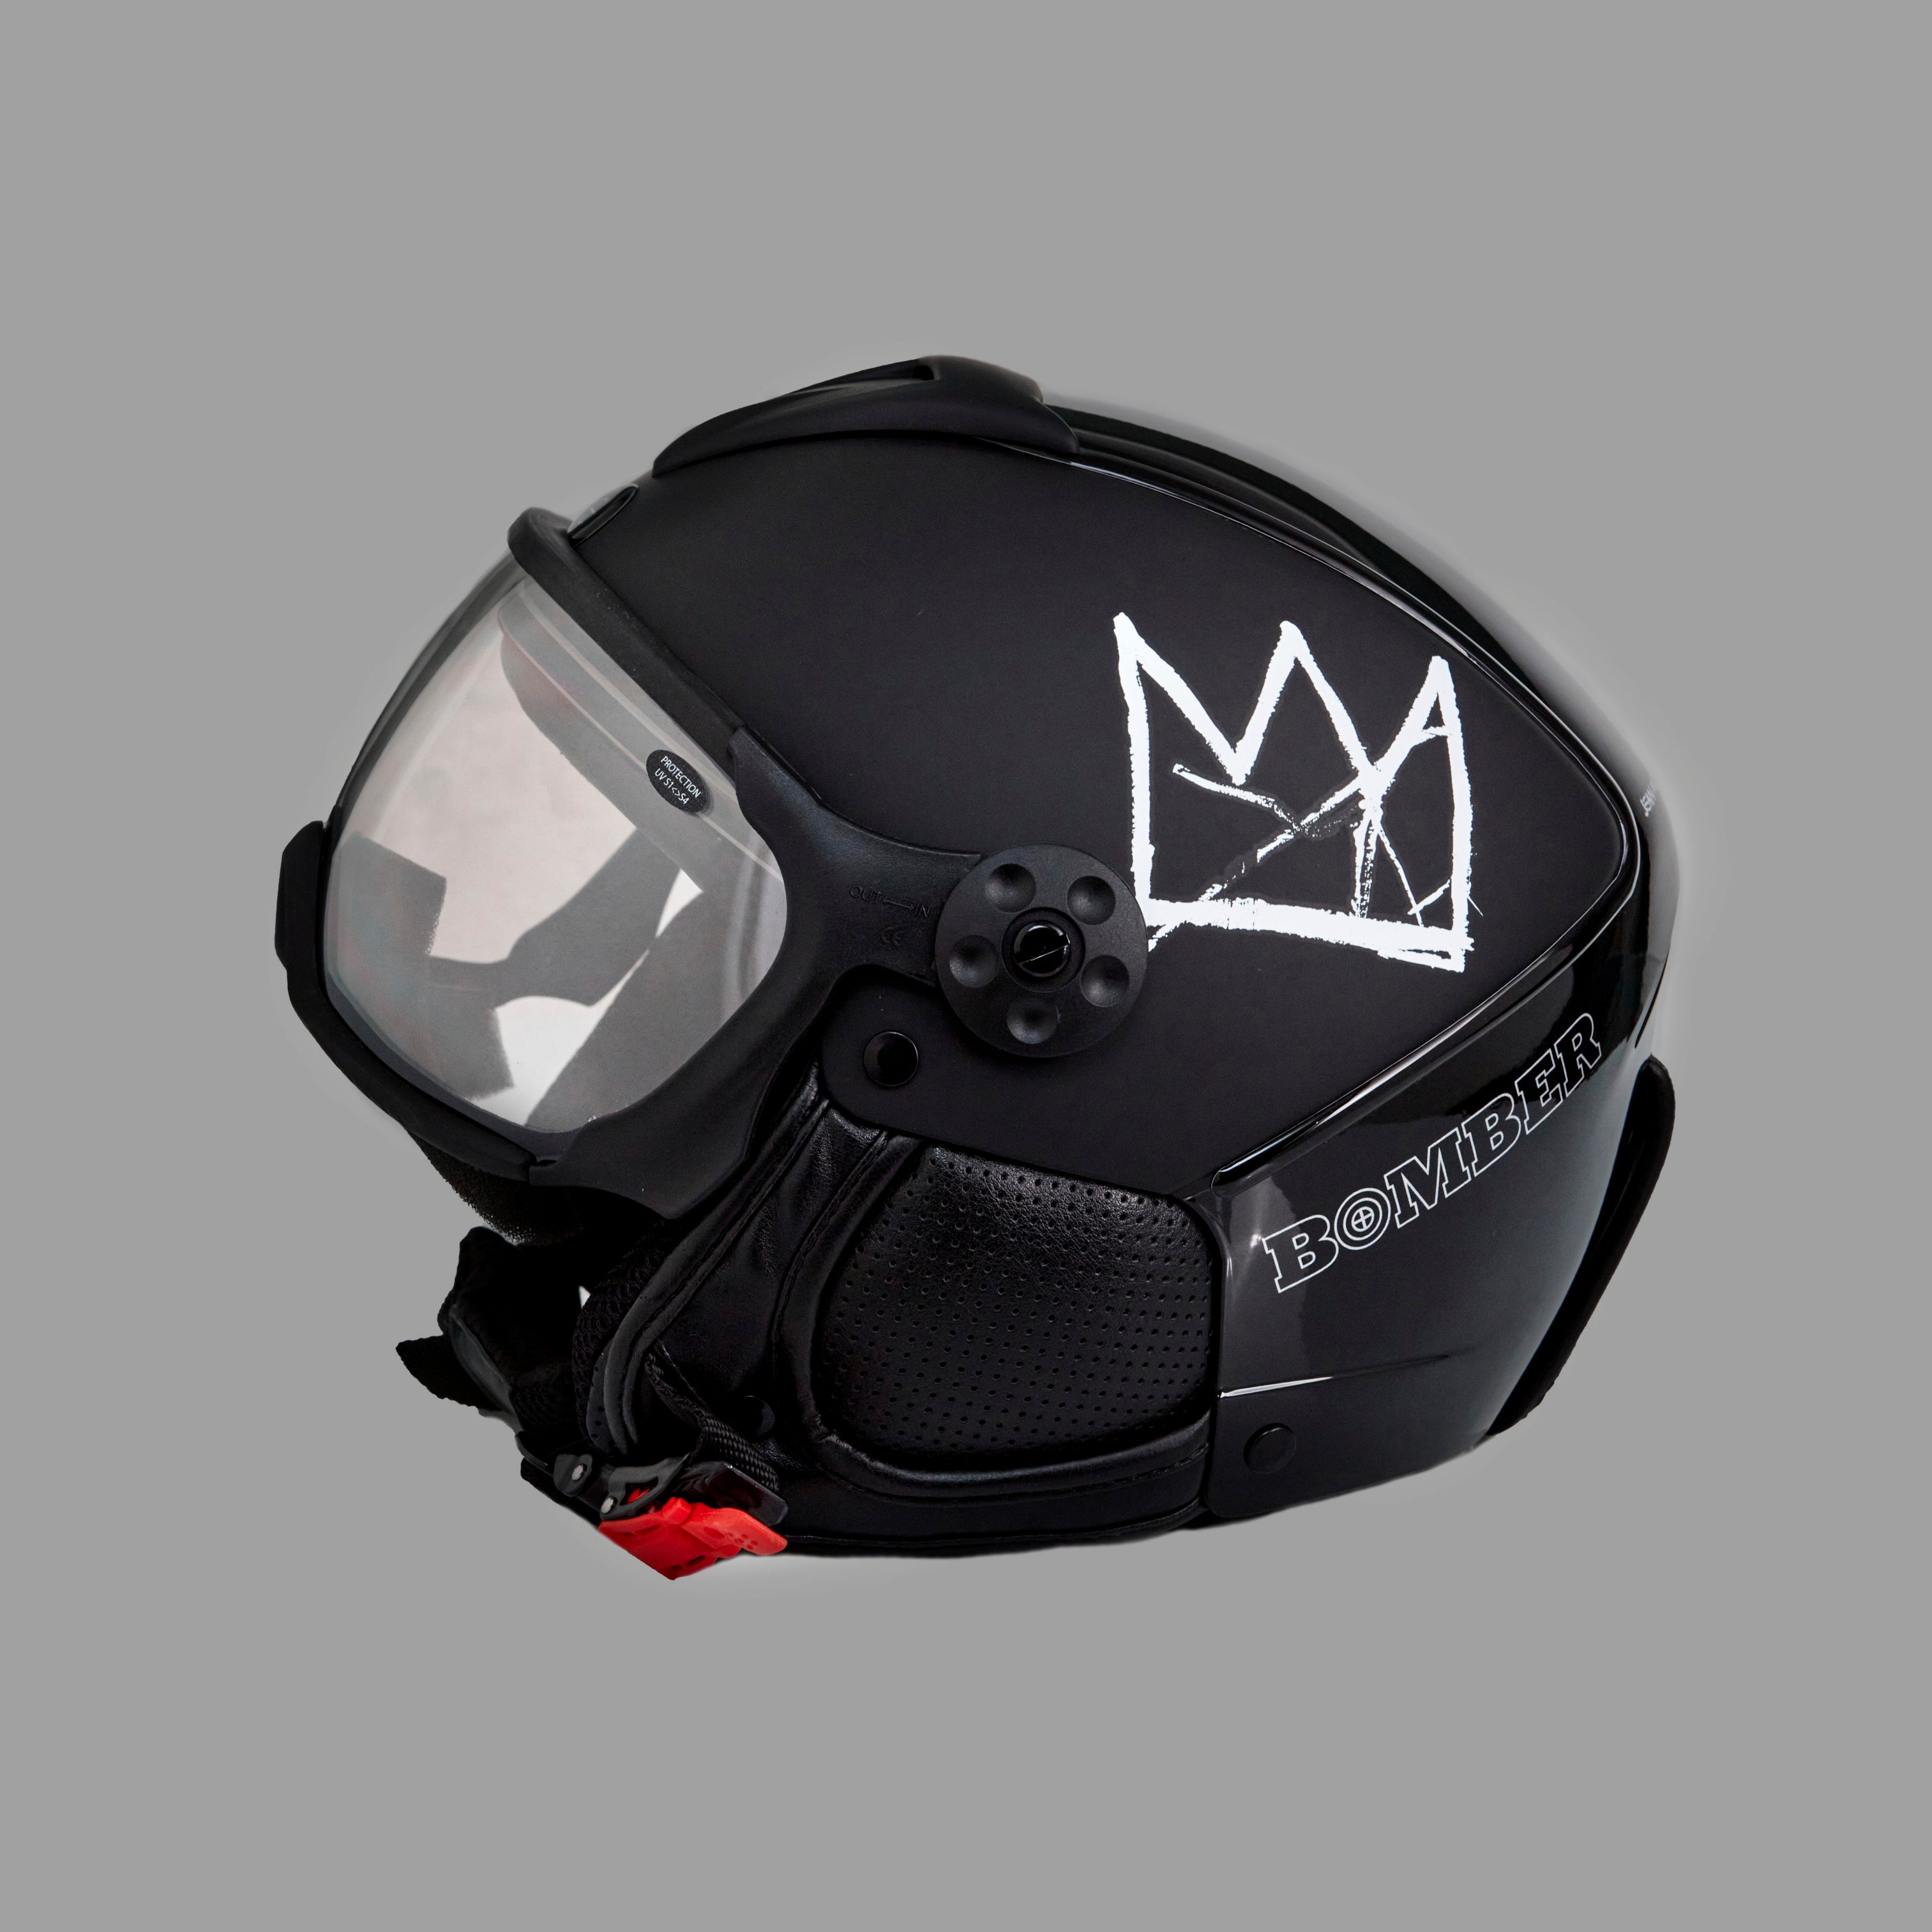 Left side view of Basquiat Black Crown Helmet in black